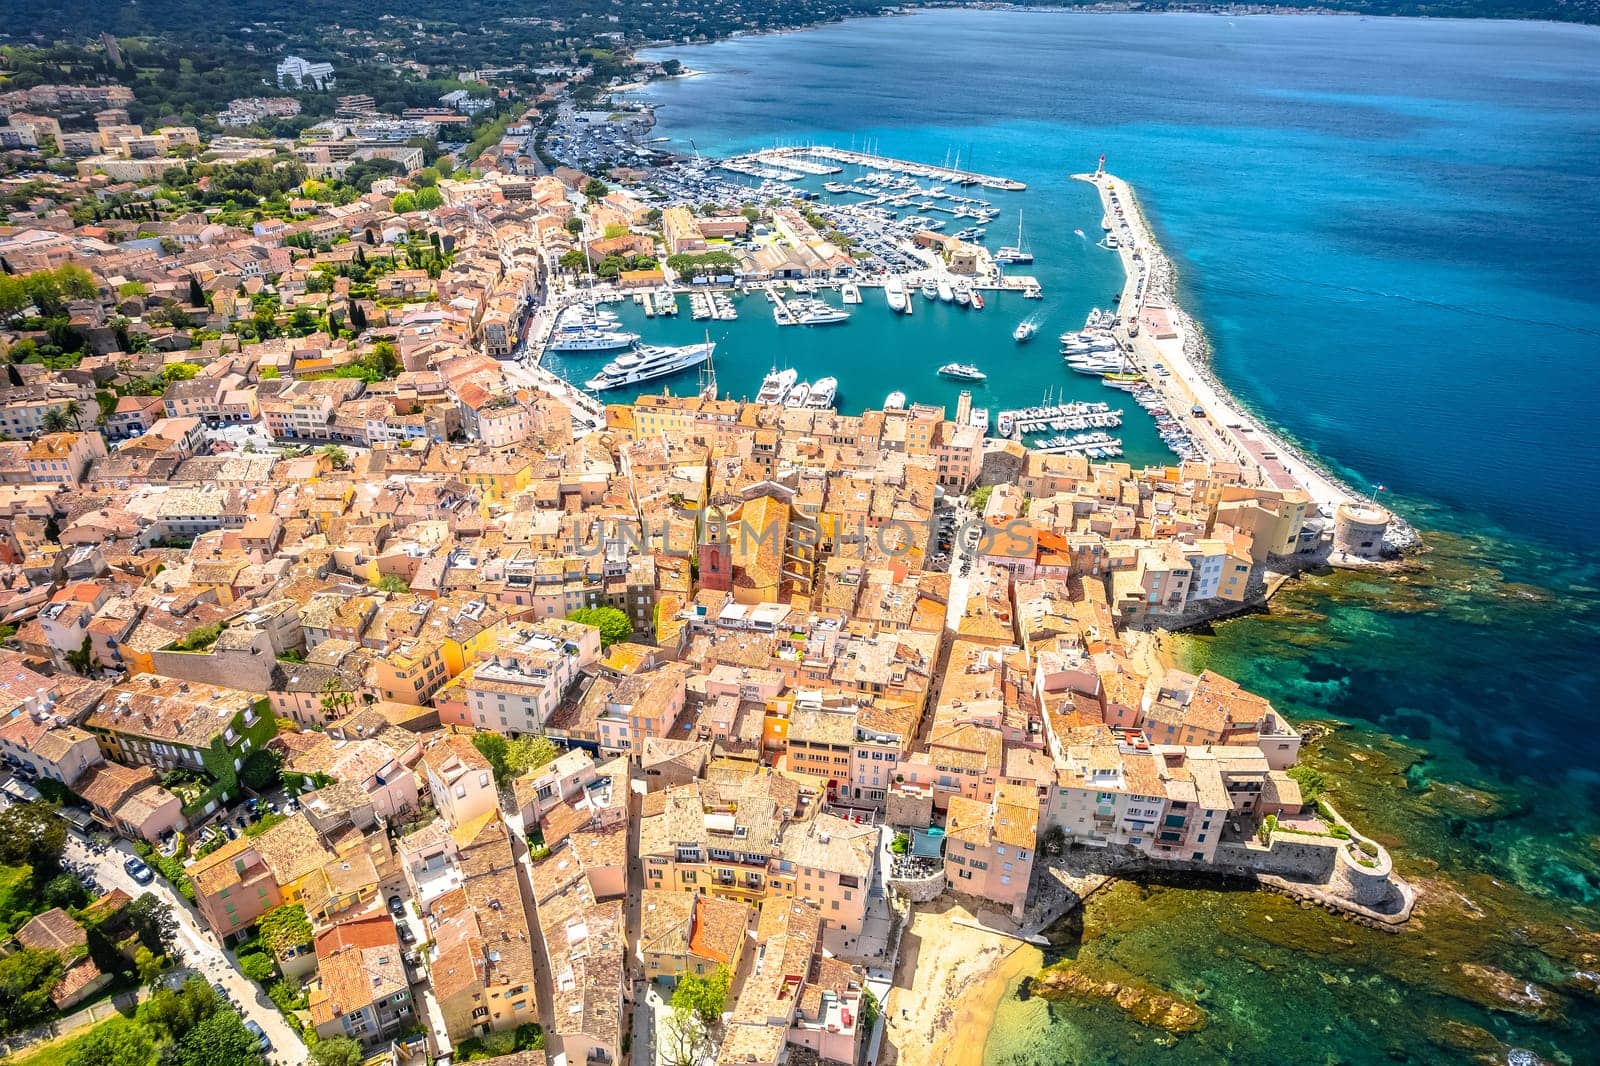 Village of Saint Tropez aerial view, luxury travel destination by xbrchx